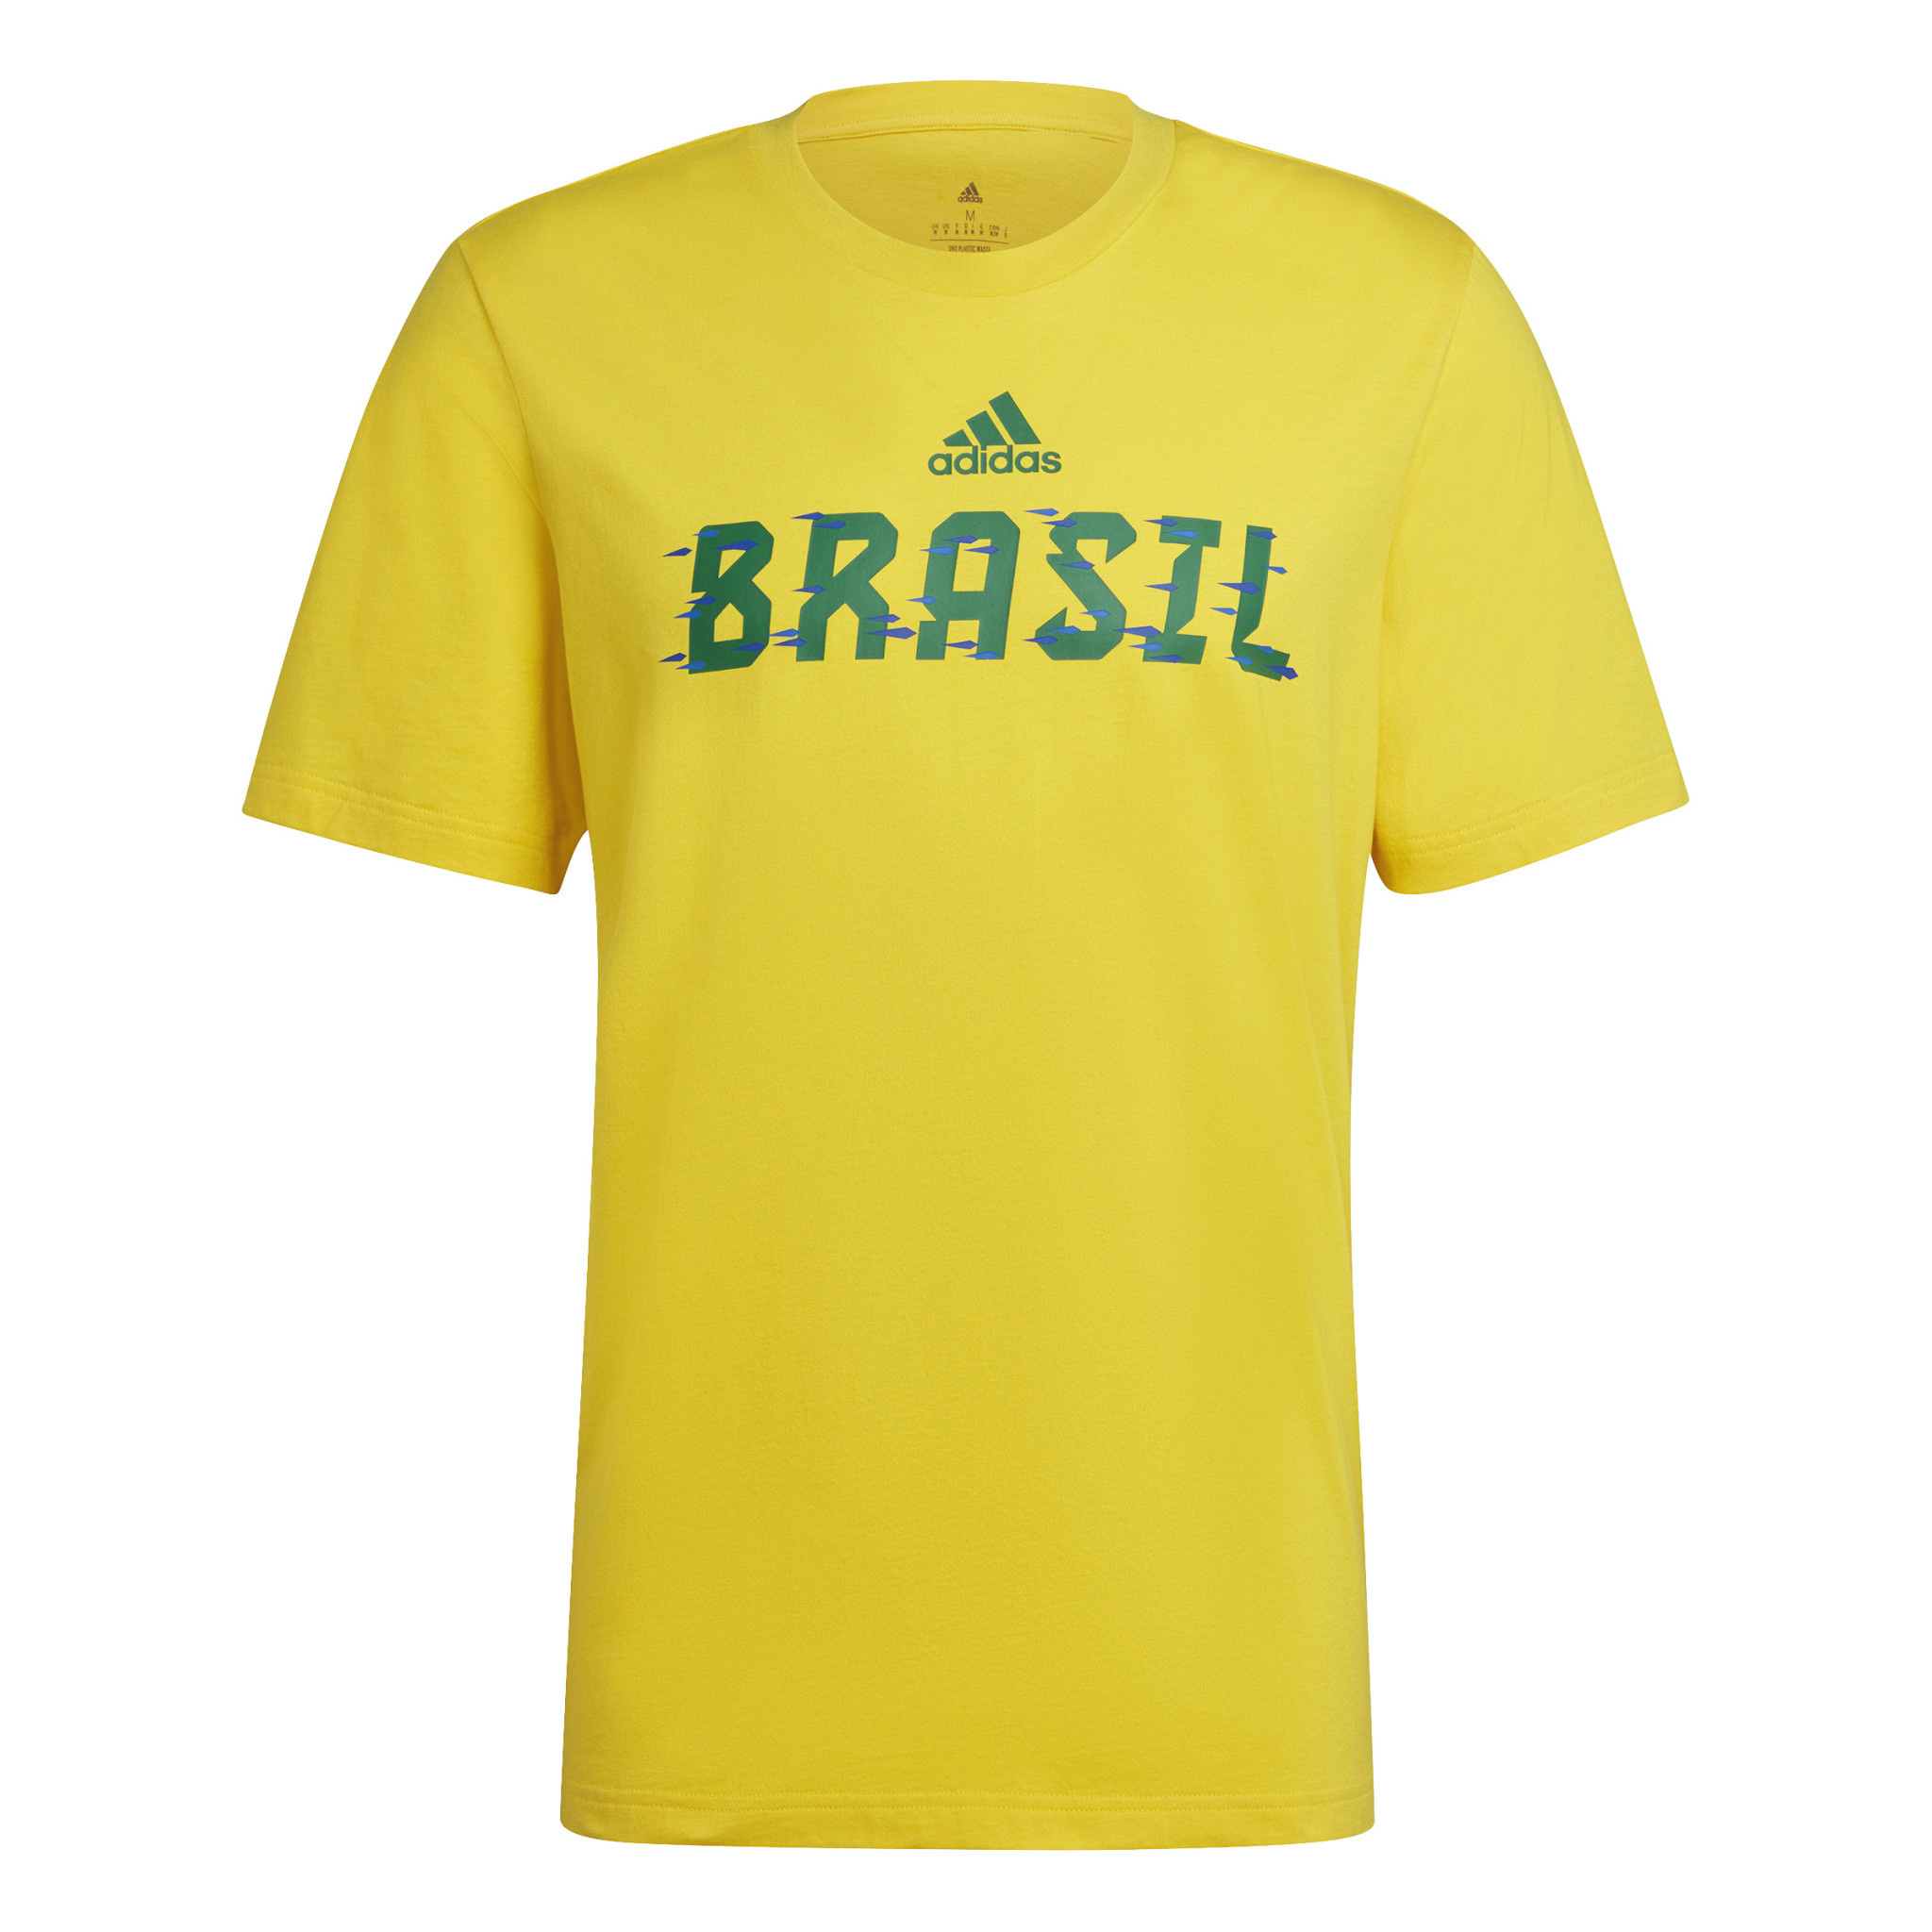 https://cdn.shoplightspeed.com/shops/611228/files/49545486/adidas-brazil-2022-world-cup-tee-yellow.jpg